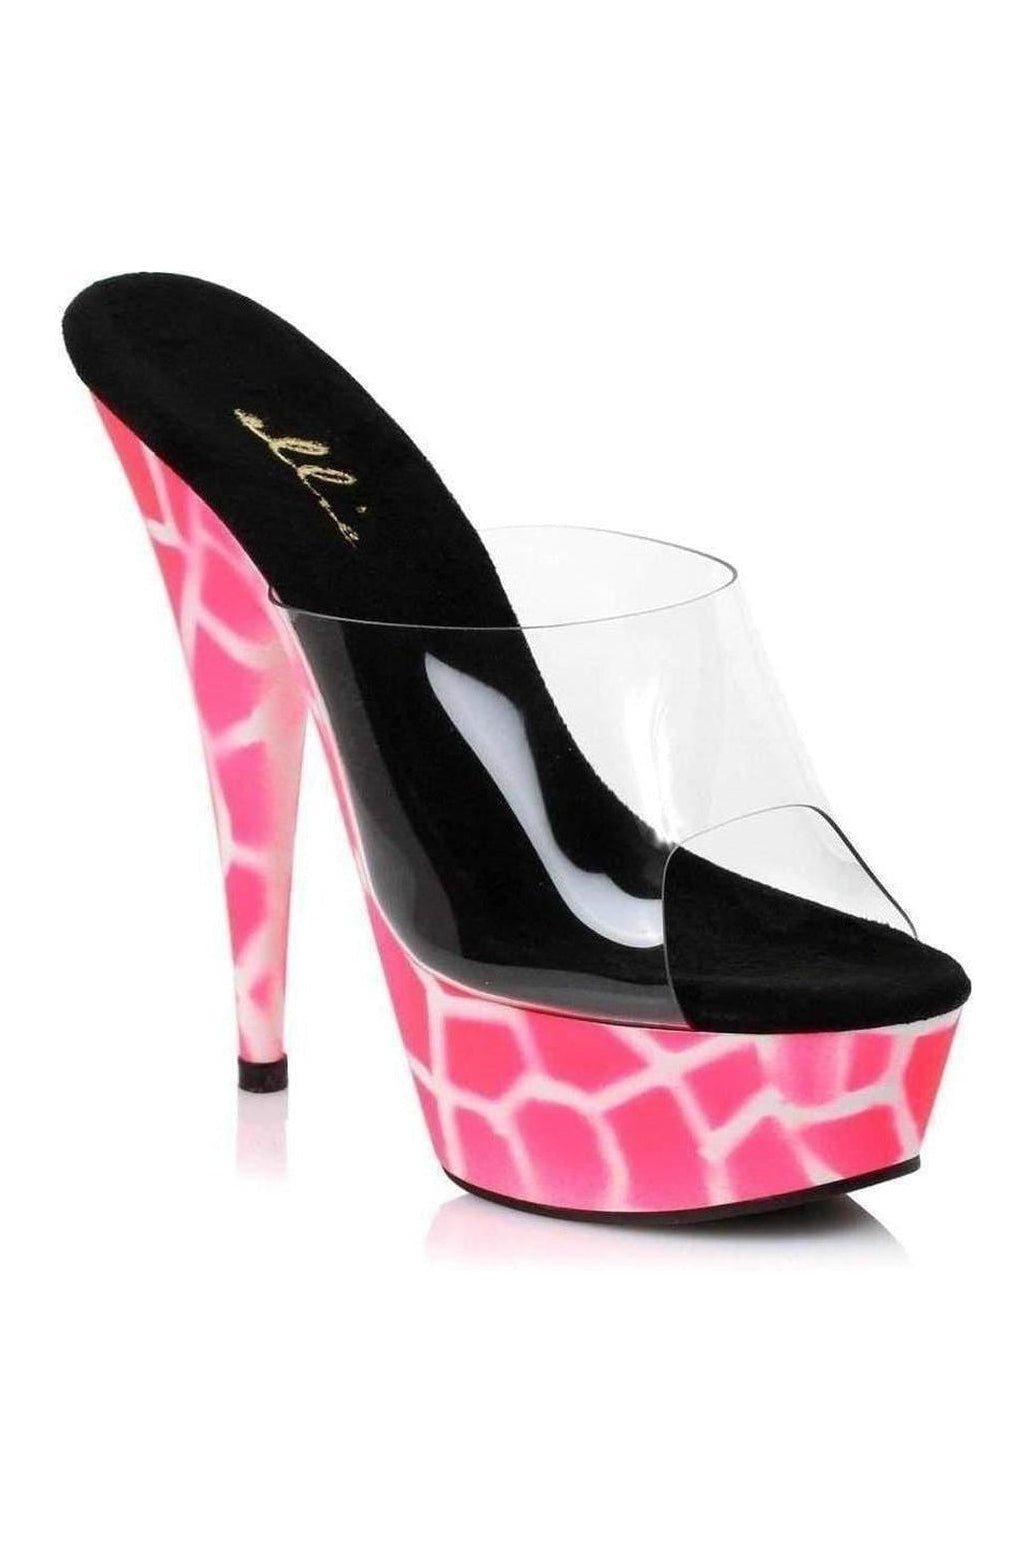 609-GIRAFFE Platform Slide | Pink Vinyl-Ellie Shoes-Pink-Slides-SEXYSHOES.COM